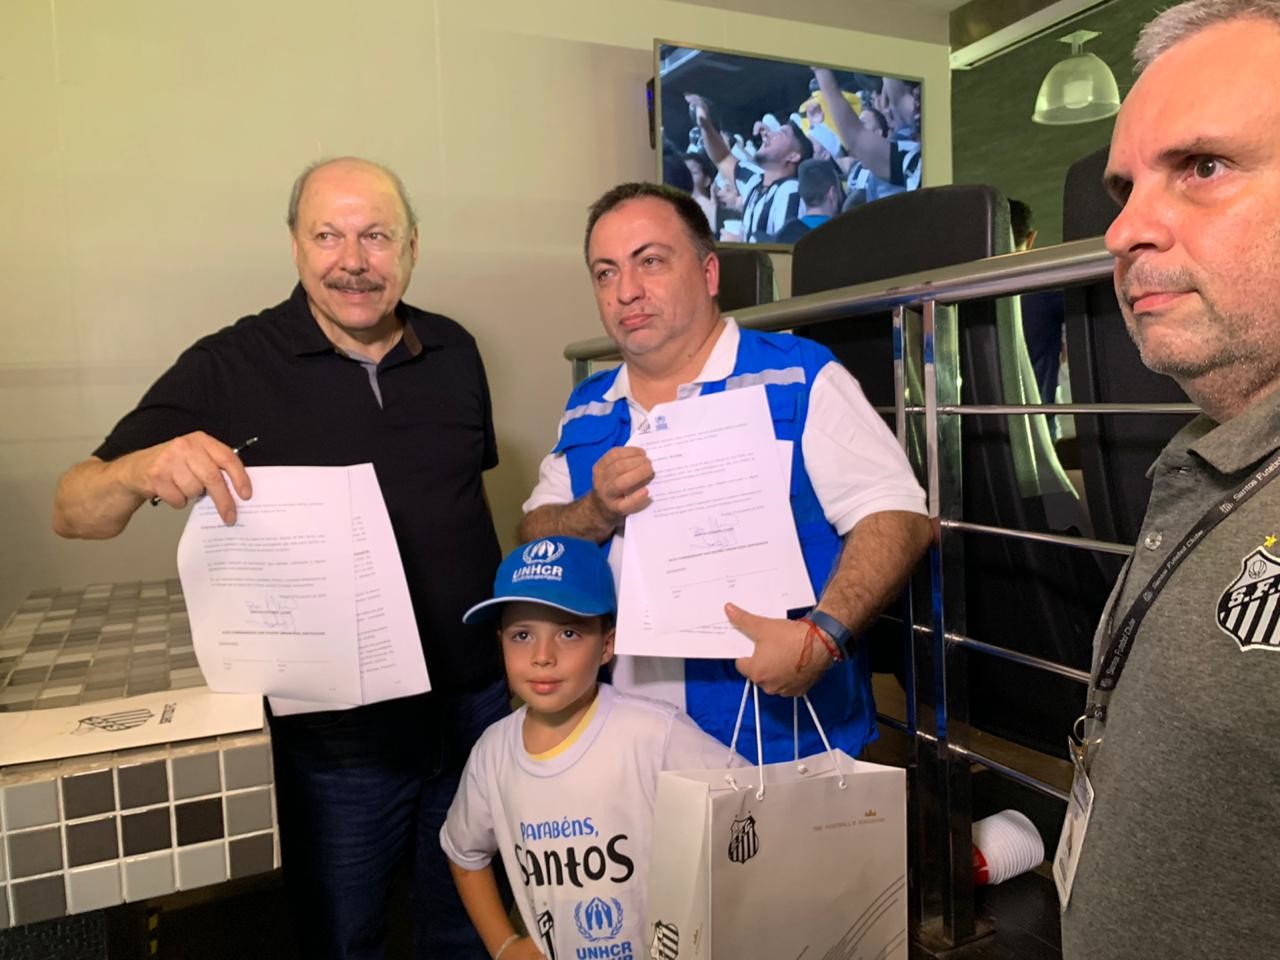 Representante do ACNUR, Jose Egas, e o Presidente do Santos FC, José Carlos Peres, apresentam termo assinado durante o intervalo do jogo 